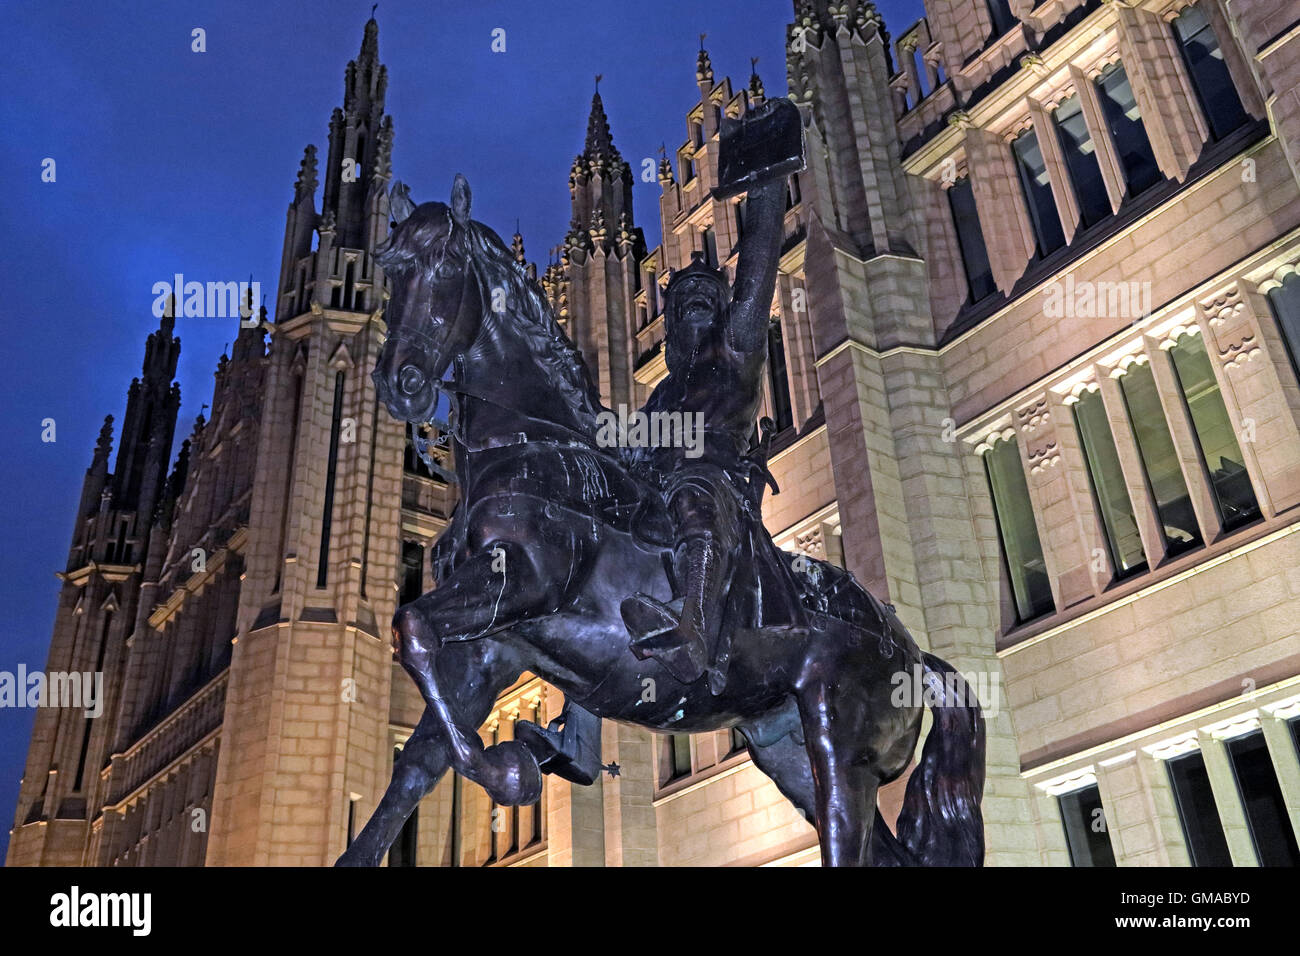 La statue de Robert Bruce,collège Marischal au crépuscule, la Ville d'Aberdeen, Écosse, Royaume-Uni Banque D'Images